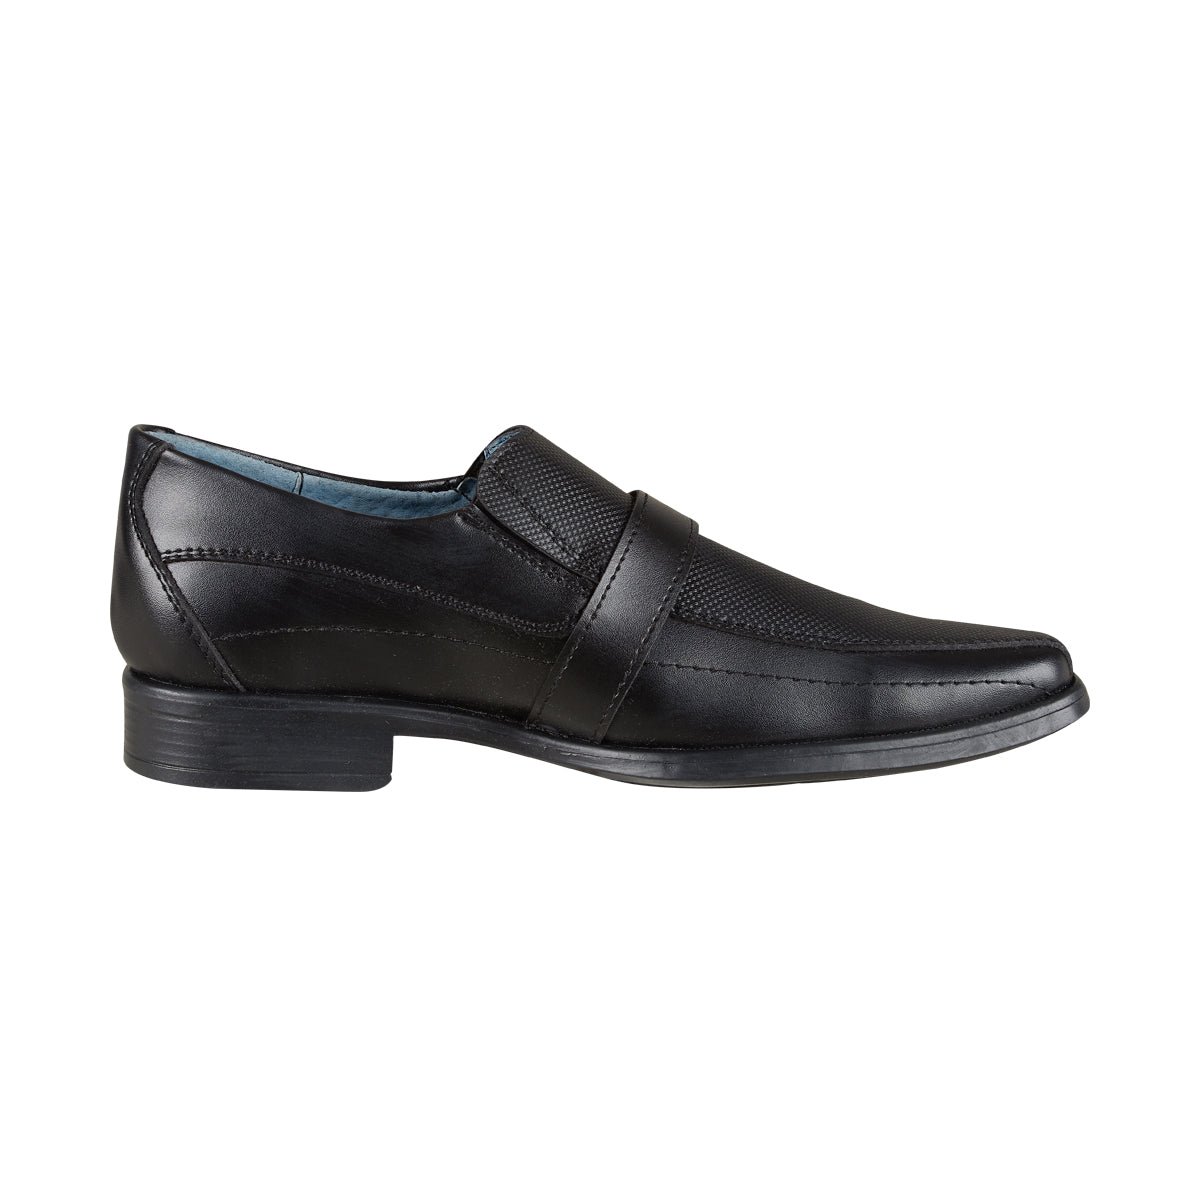 Zapato de Vestir Para Hombre CASTALIA 455-35 Negro de Piel